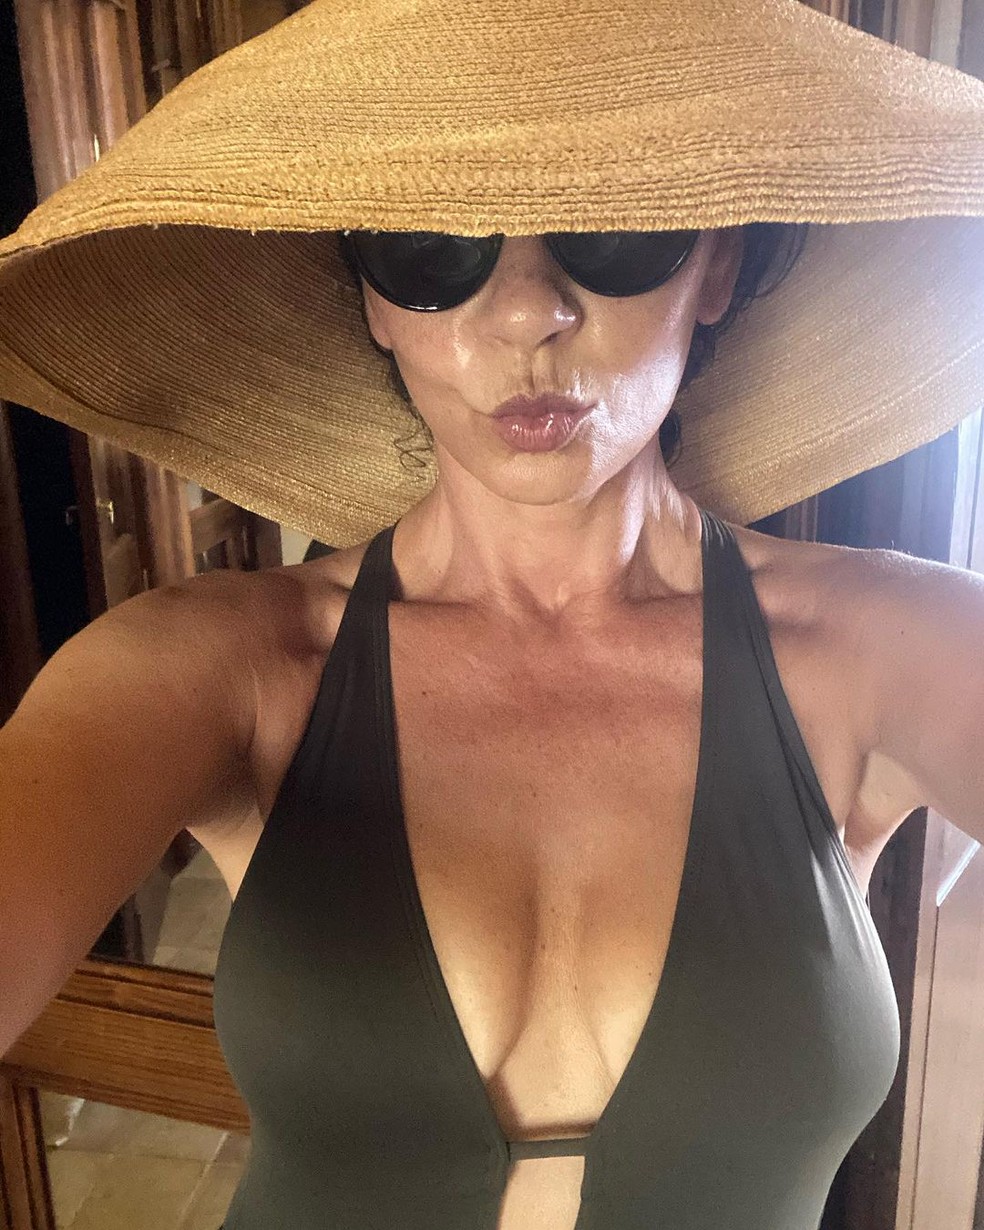 Catherine Zeta-Jones compartilha cliques de maiô com recorte frontal e ganha elogios — Foto: Reprodução / Instagram